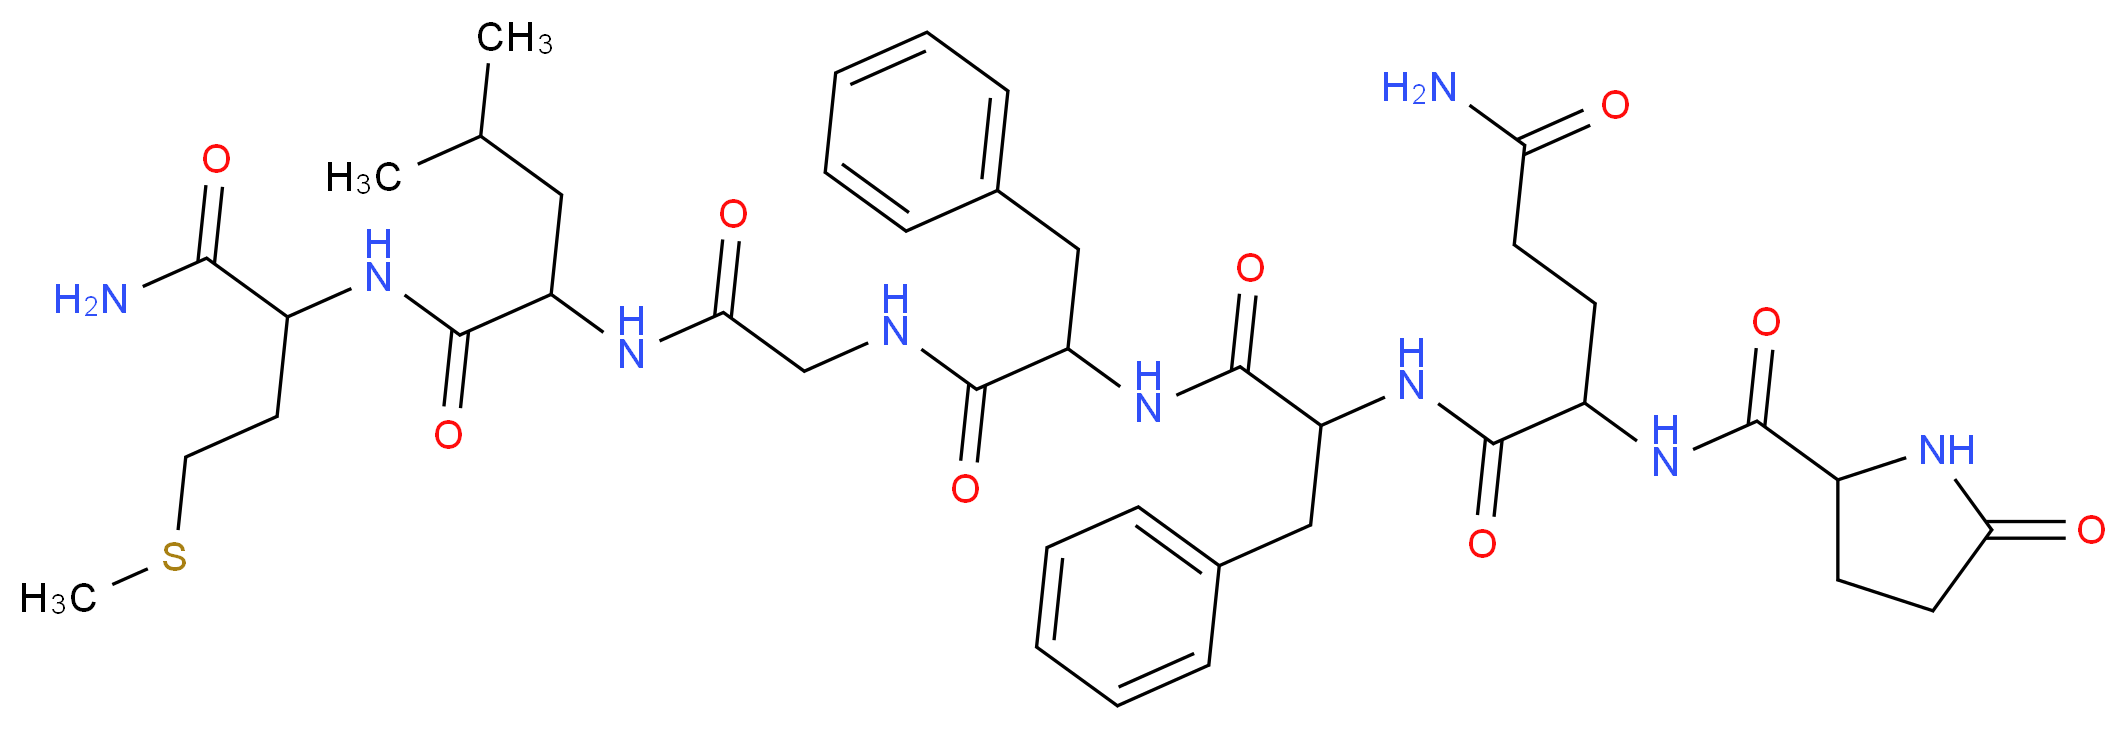 56104-22-4 molecular structure